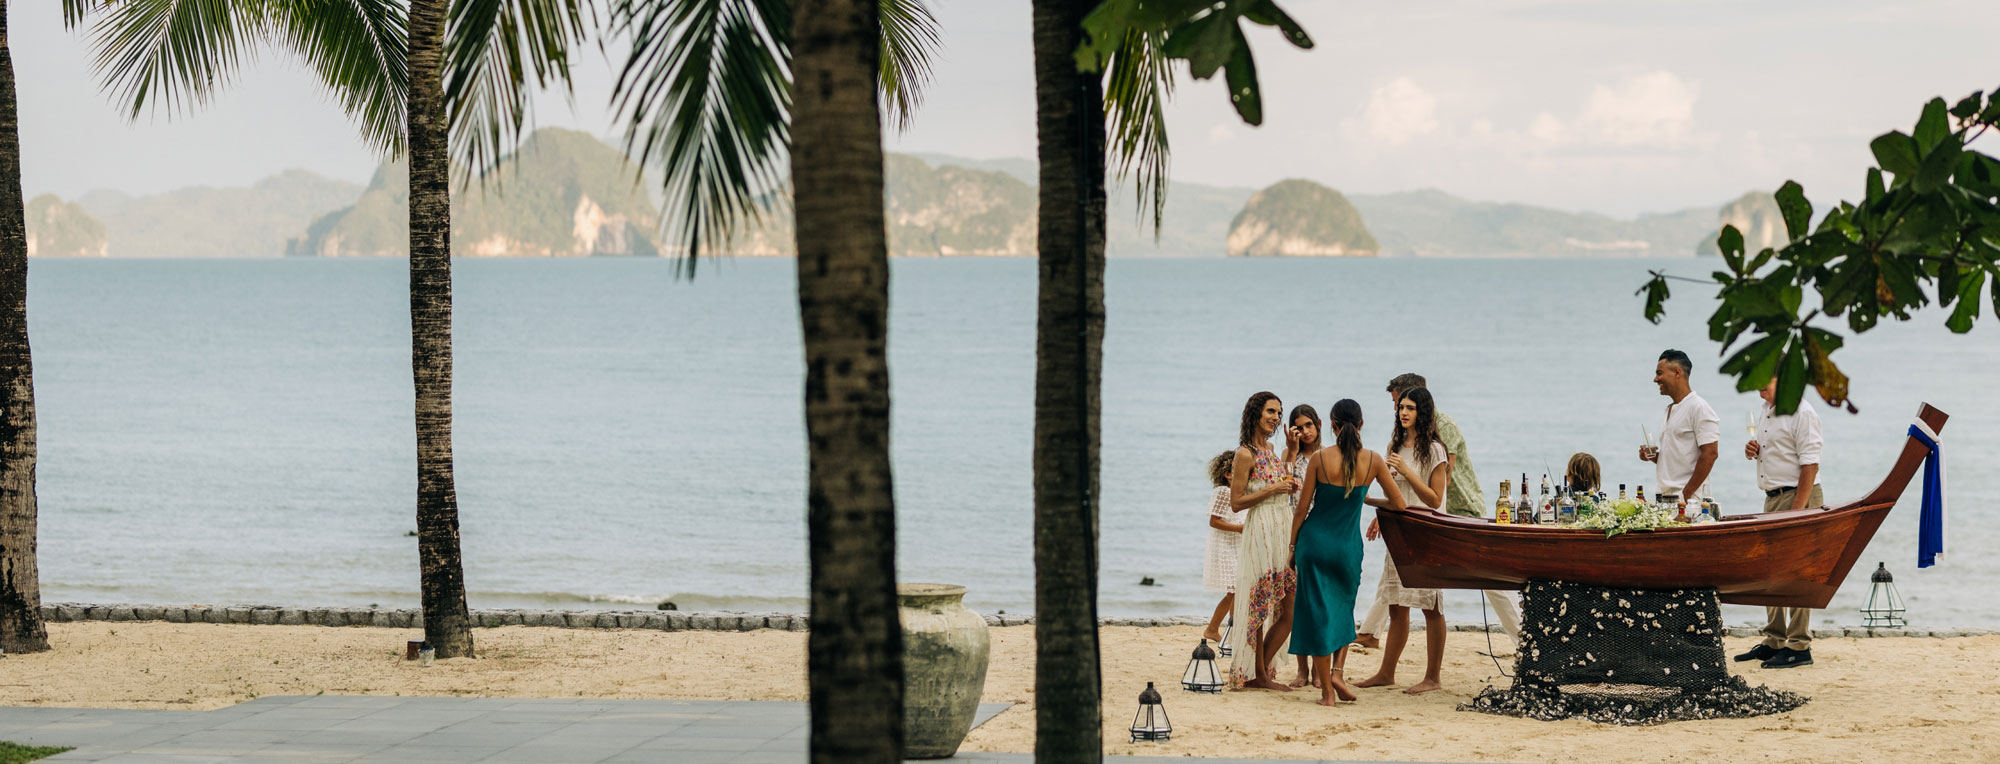 ÀNI Thailand - Private Beach Bar with Spectacular Views